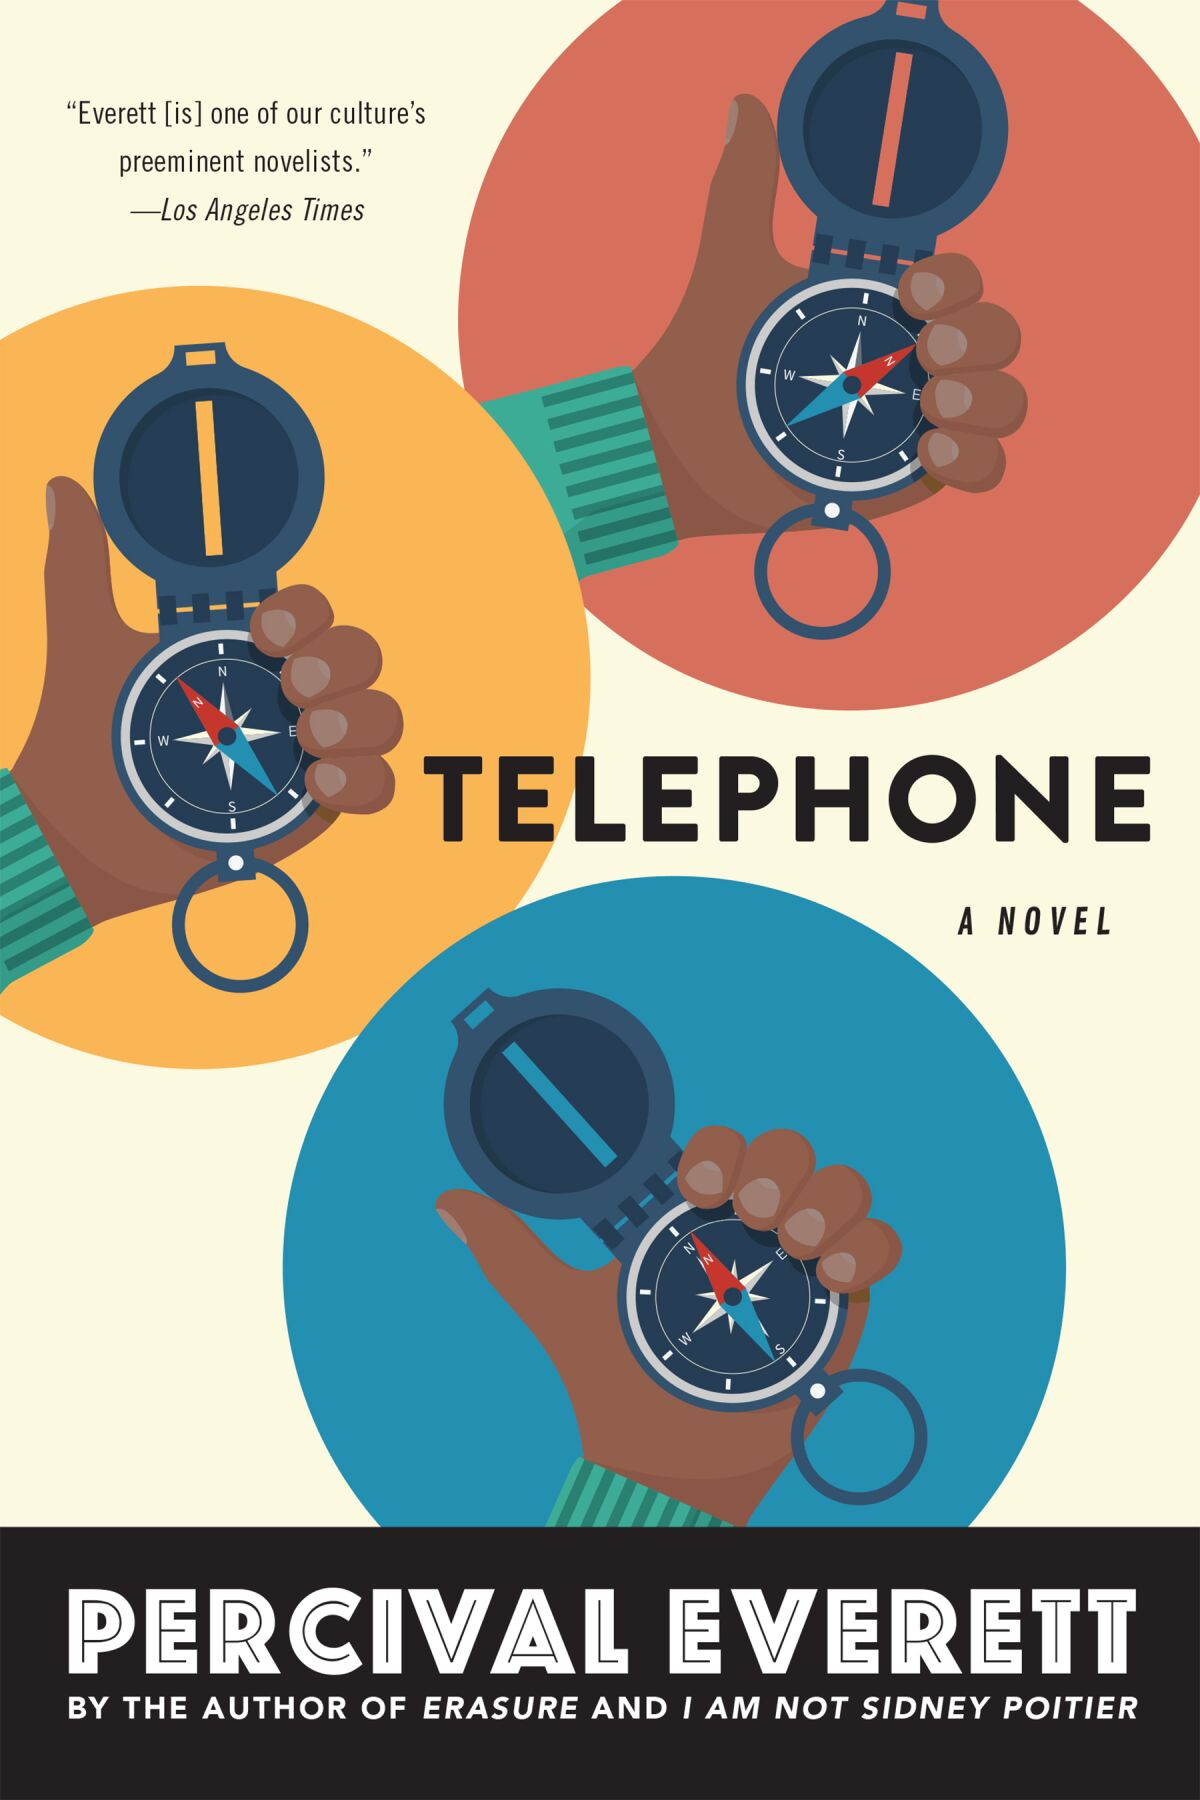 Percival Everett's latest novel, "Telephone."